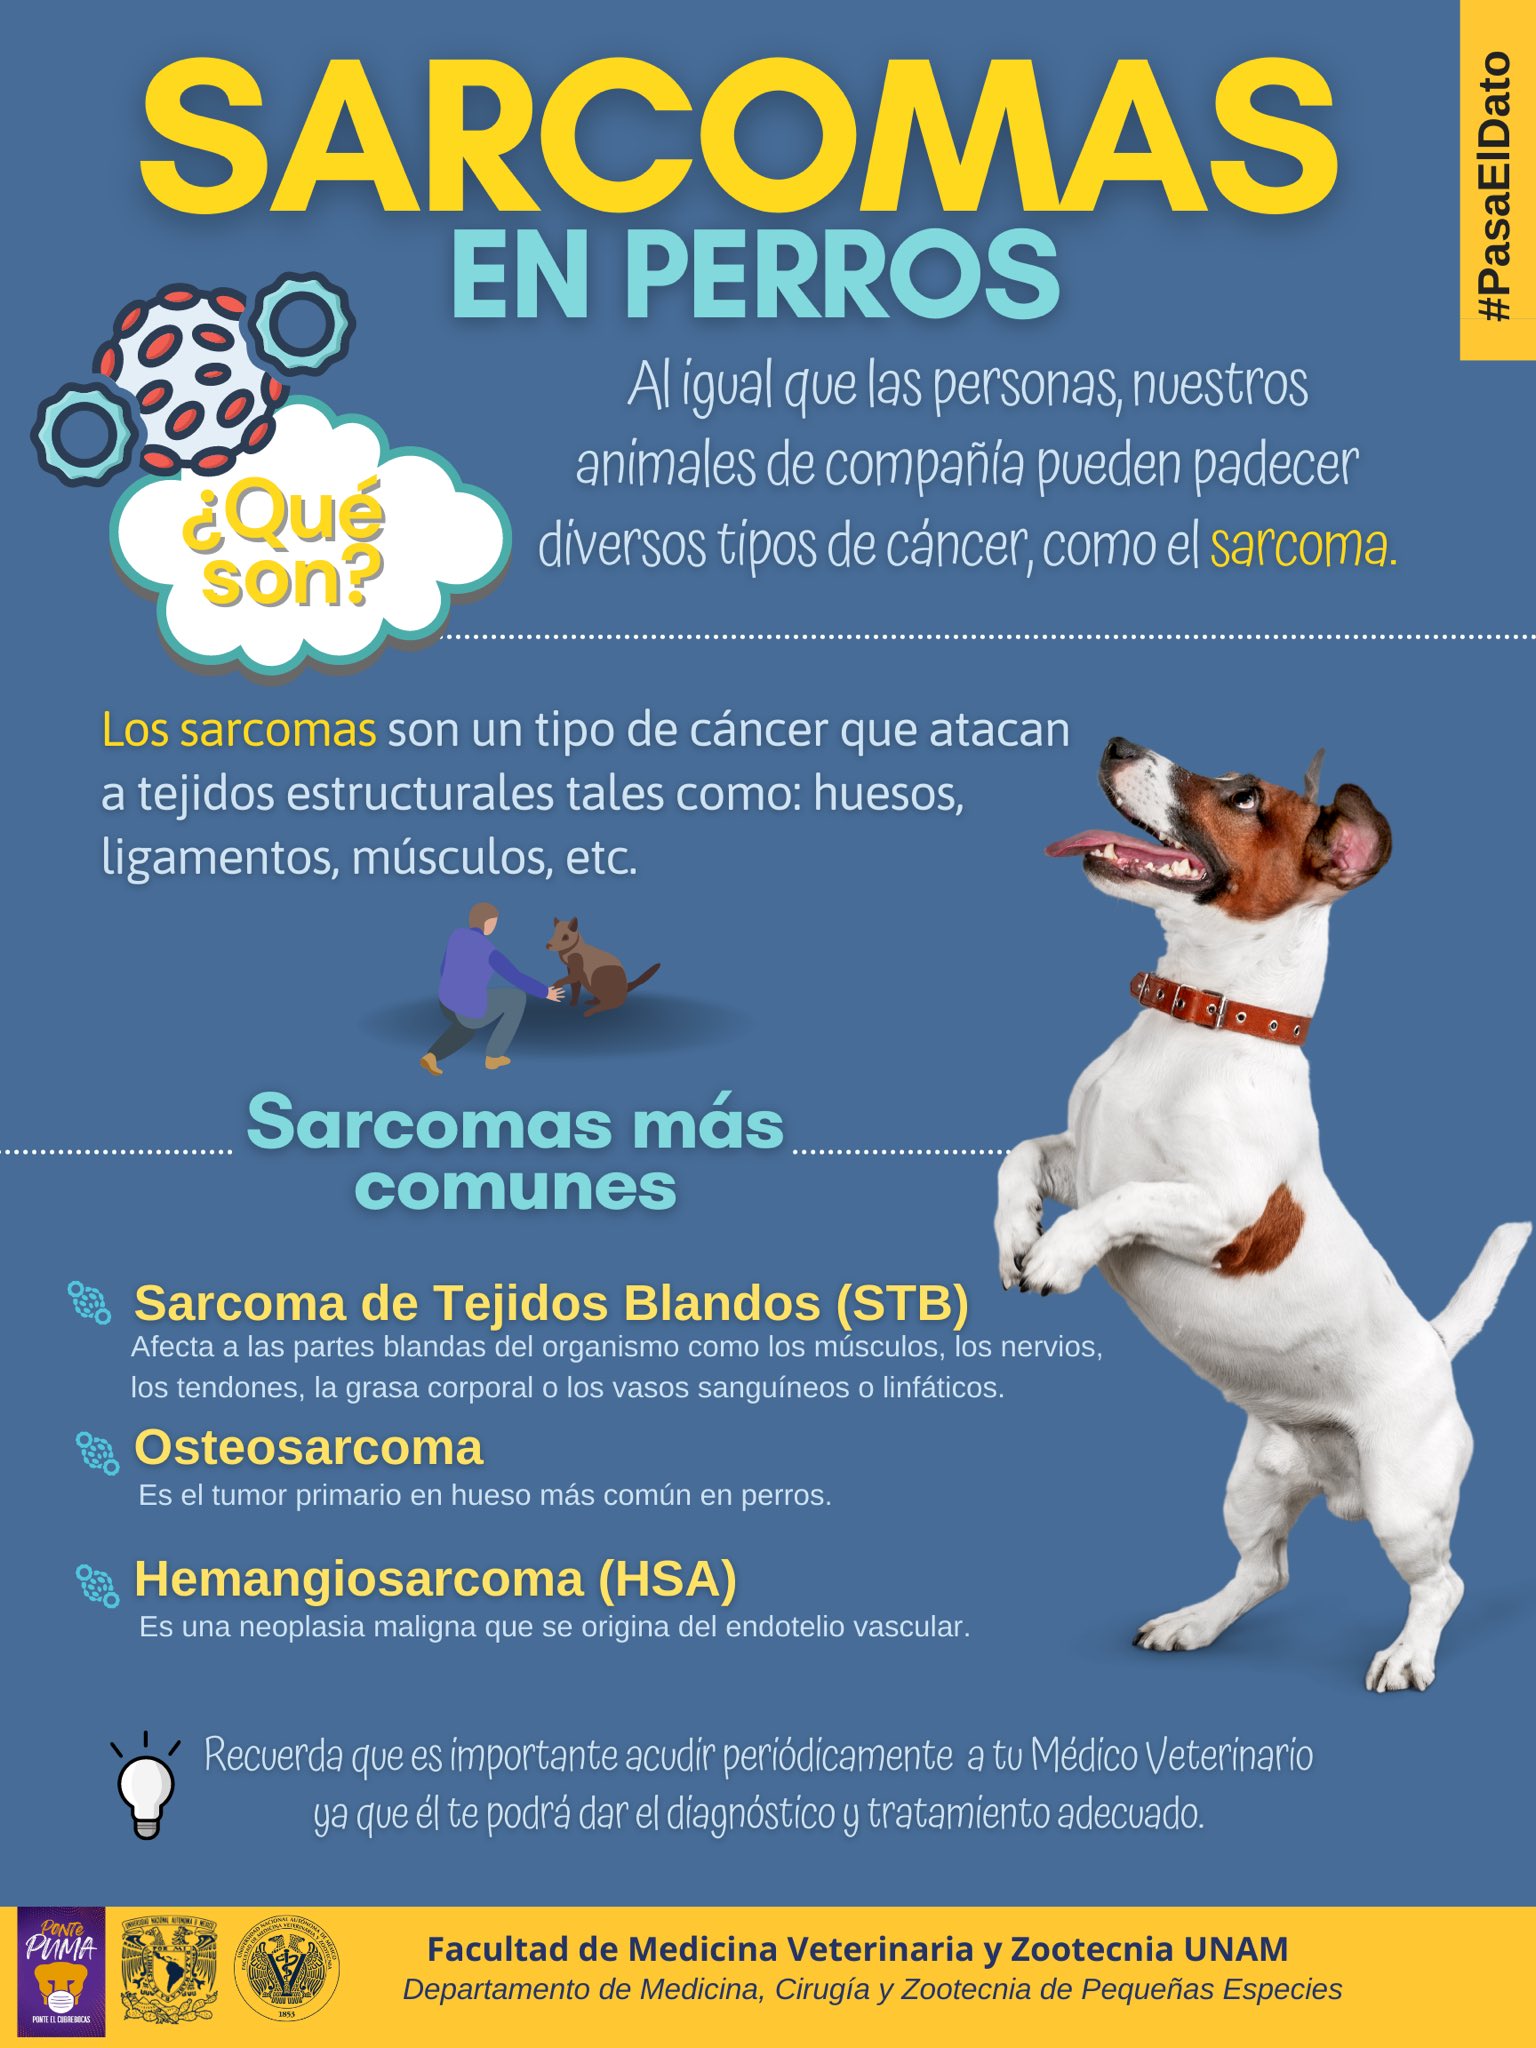 FMVZ UNAM on Twitter: "#PasaElDato | Hoy es el Día Internacional del Sarcoma  y para conmemorar esta fecha creamos una infografía sobre los sarcomas más  comunes que existen en perros ¡Échale un